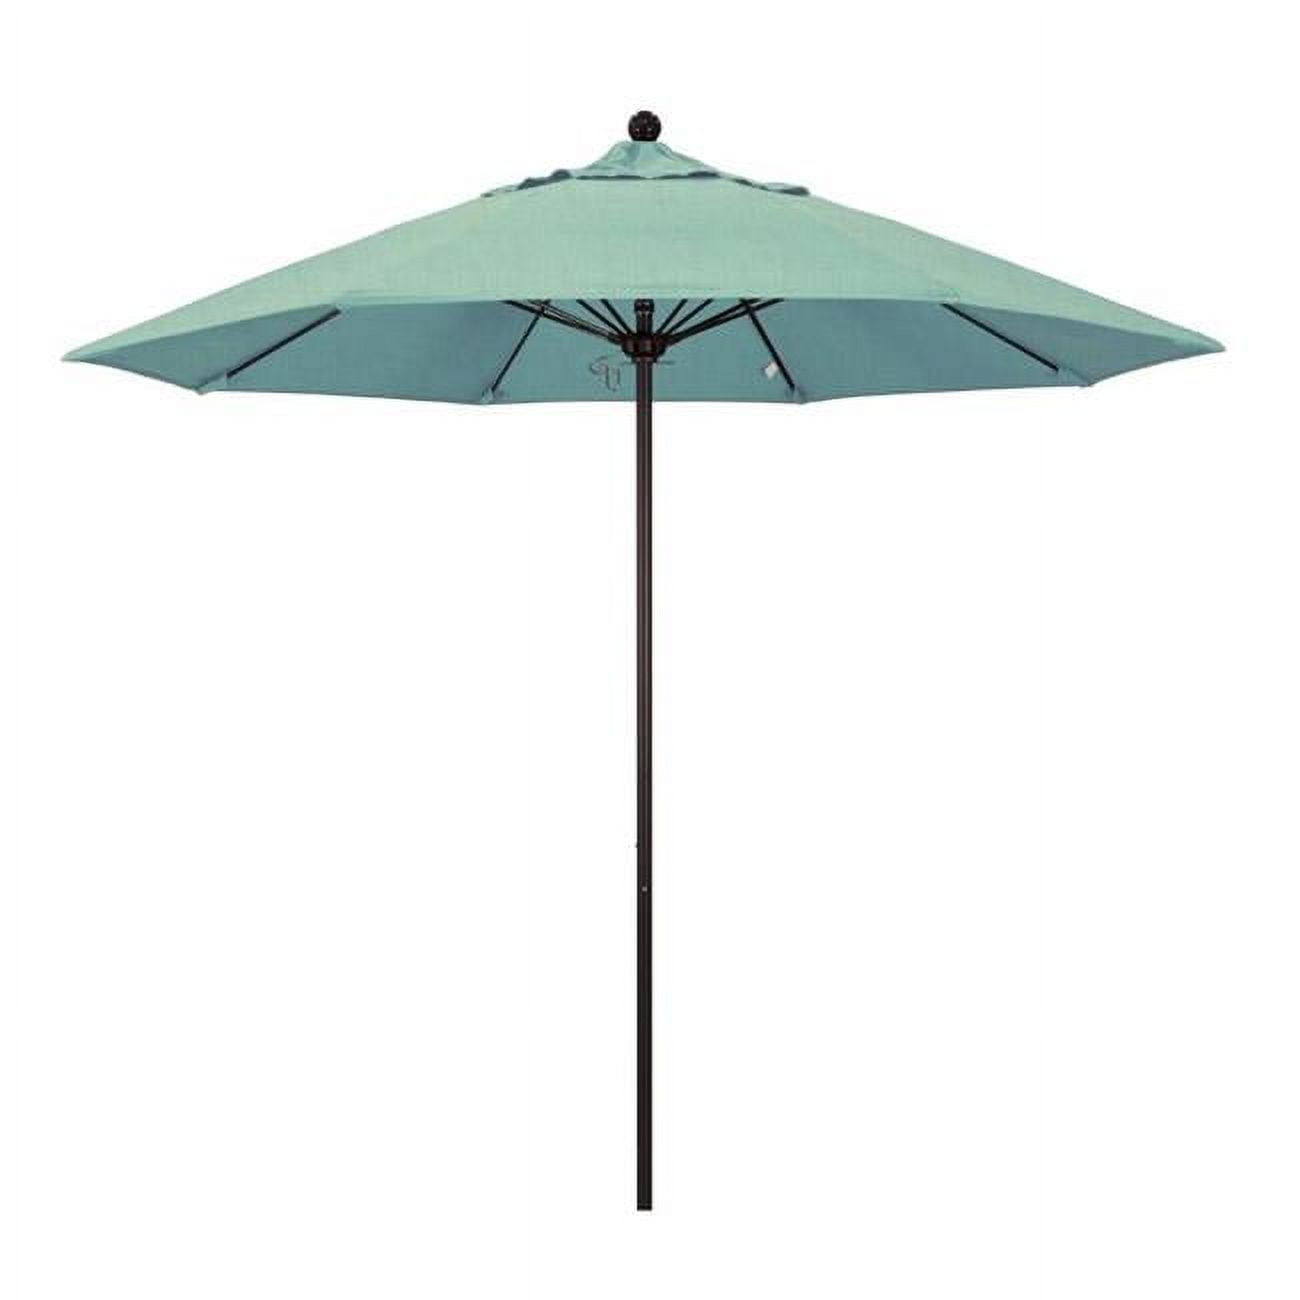 Alto908117-5413 Venture Bronze Market Umbrella, Spa - 9 Ft. X 8 Ribs